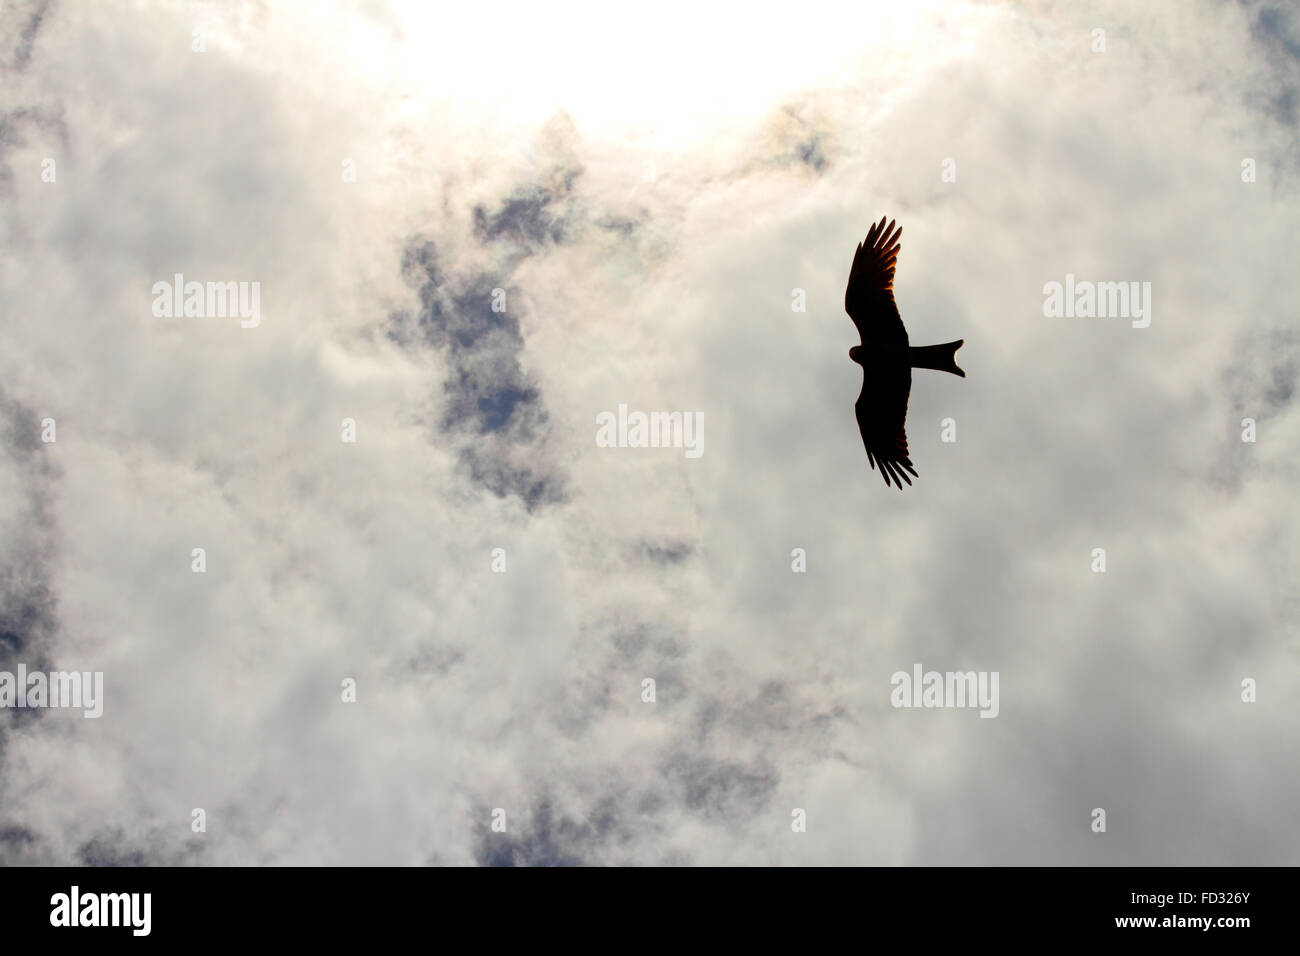 La silhouette di un falco in volo le nubi alte al di sopra Foto Stock